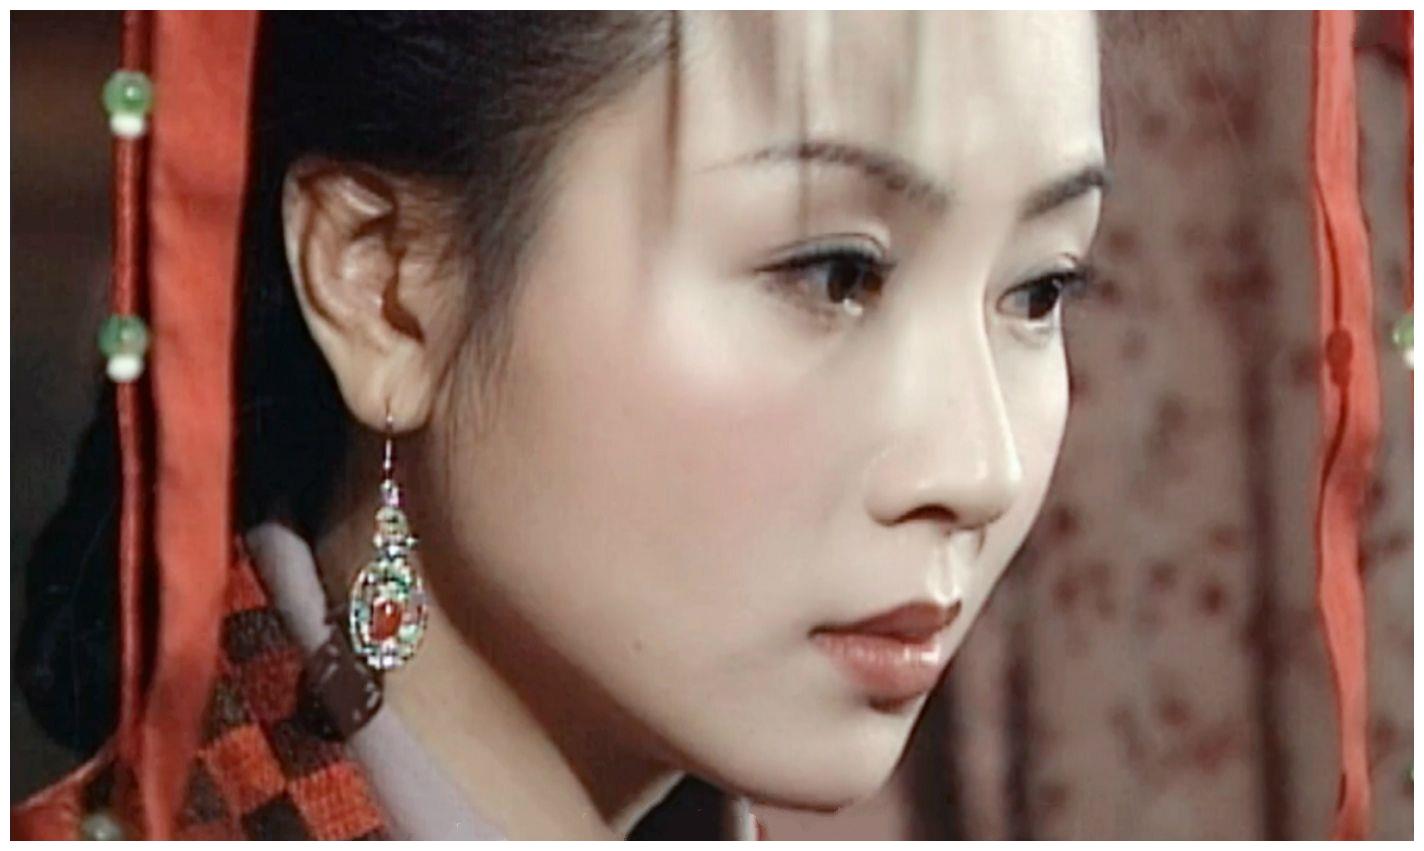 《人龙传说》,是有陈浩民和袁洁莹主演的古装剧